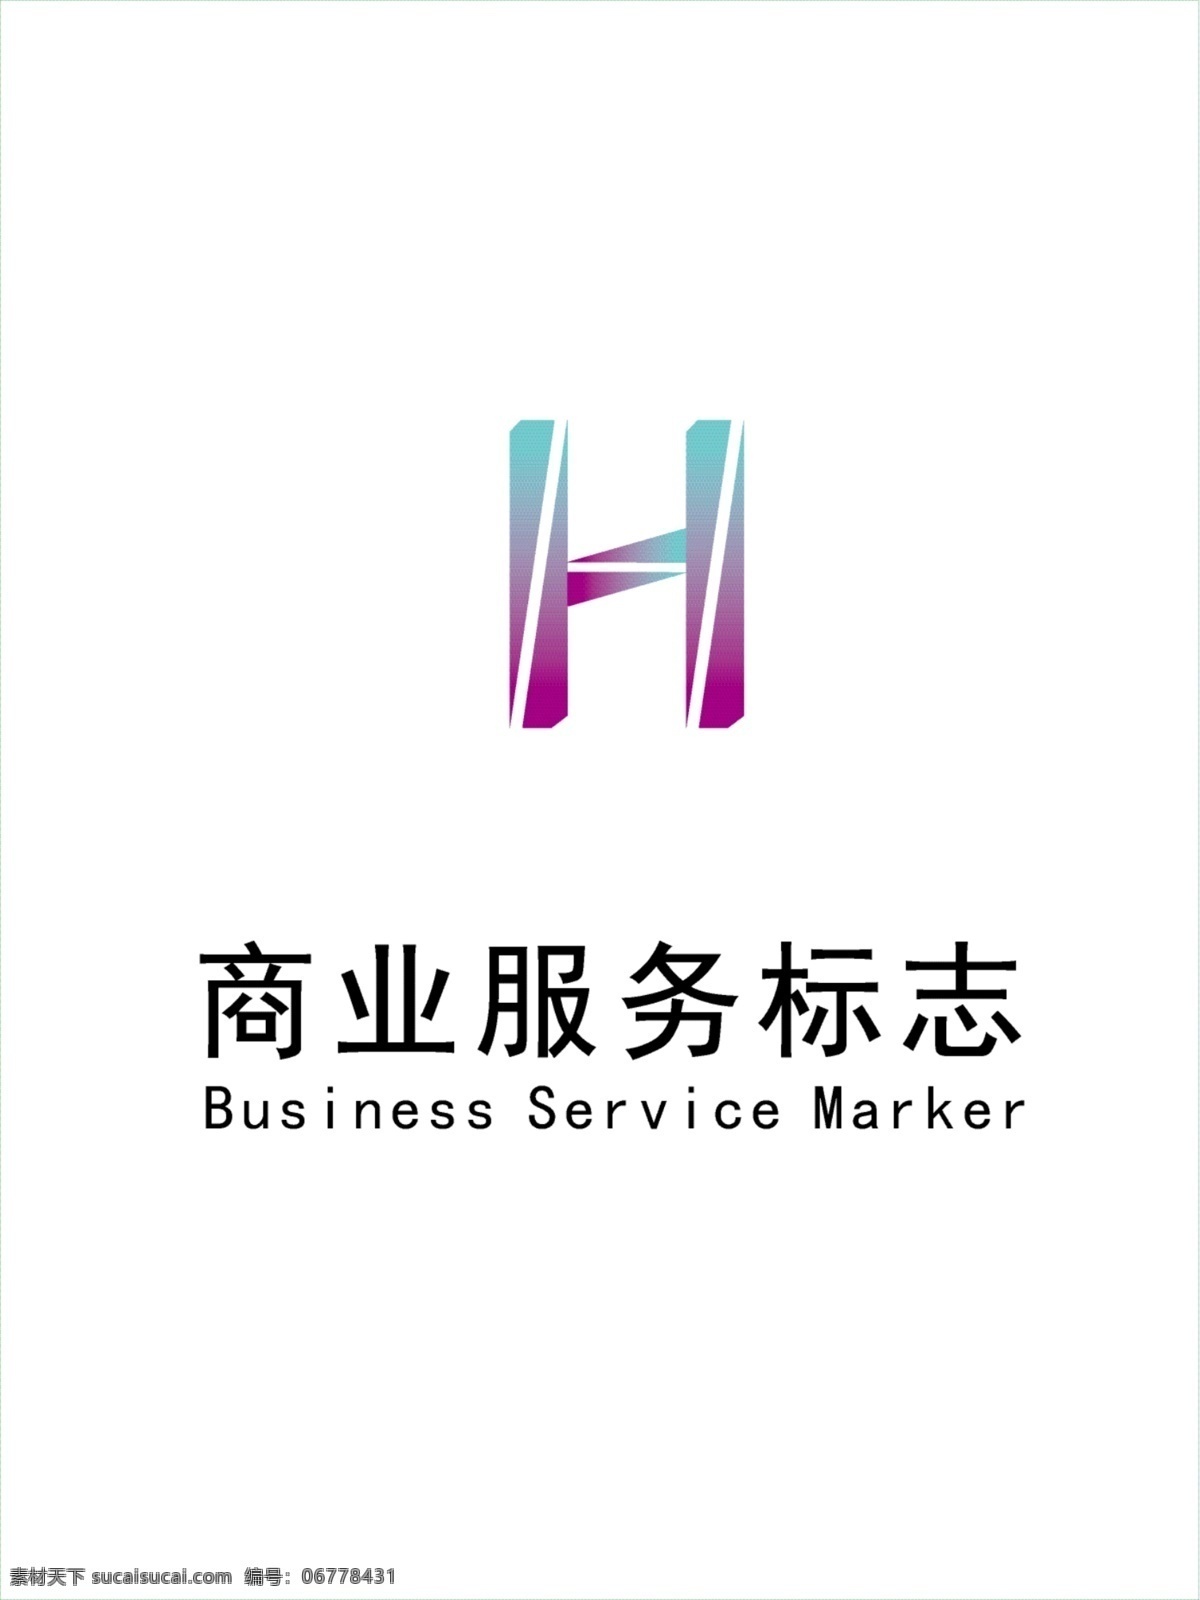 商业服务 标志 logo 商业服务标志 h字母标志 h 字母 影视logo 影视标志 企业标志 企业logo